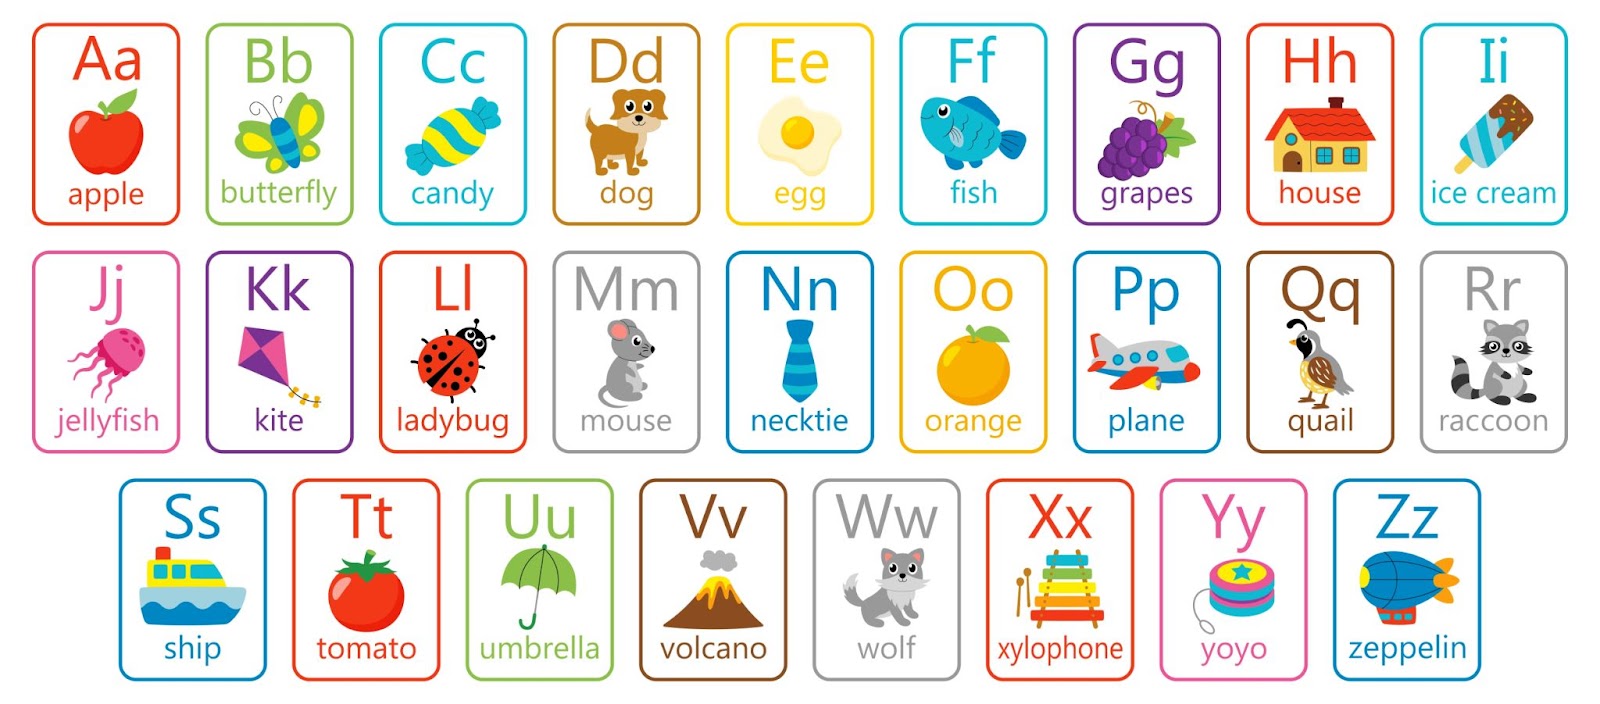 carte mémo alphabet pour apprendre des mots anglais